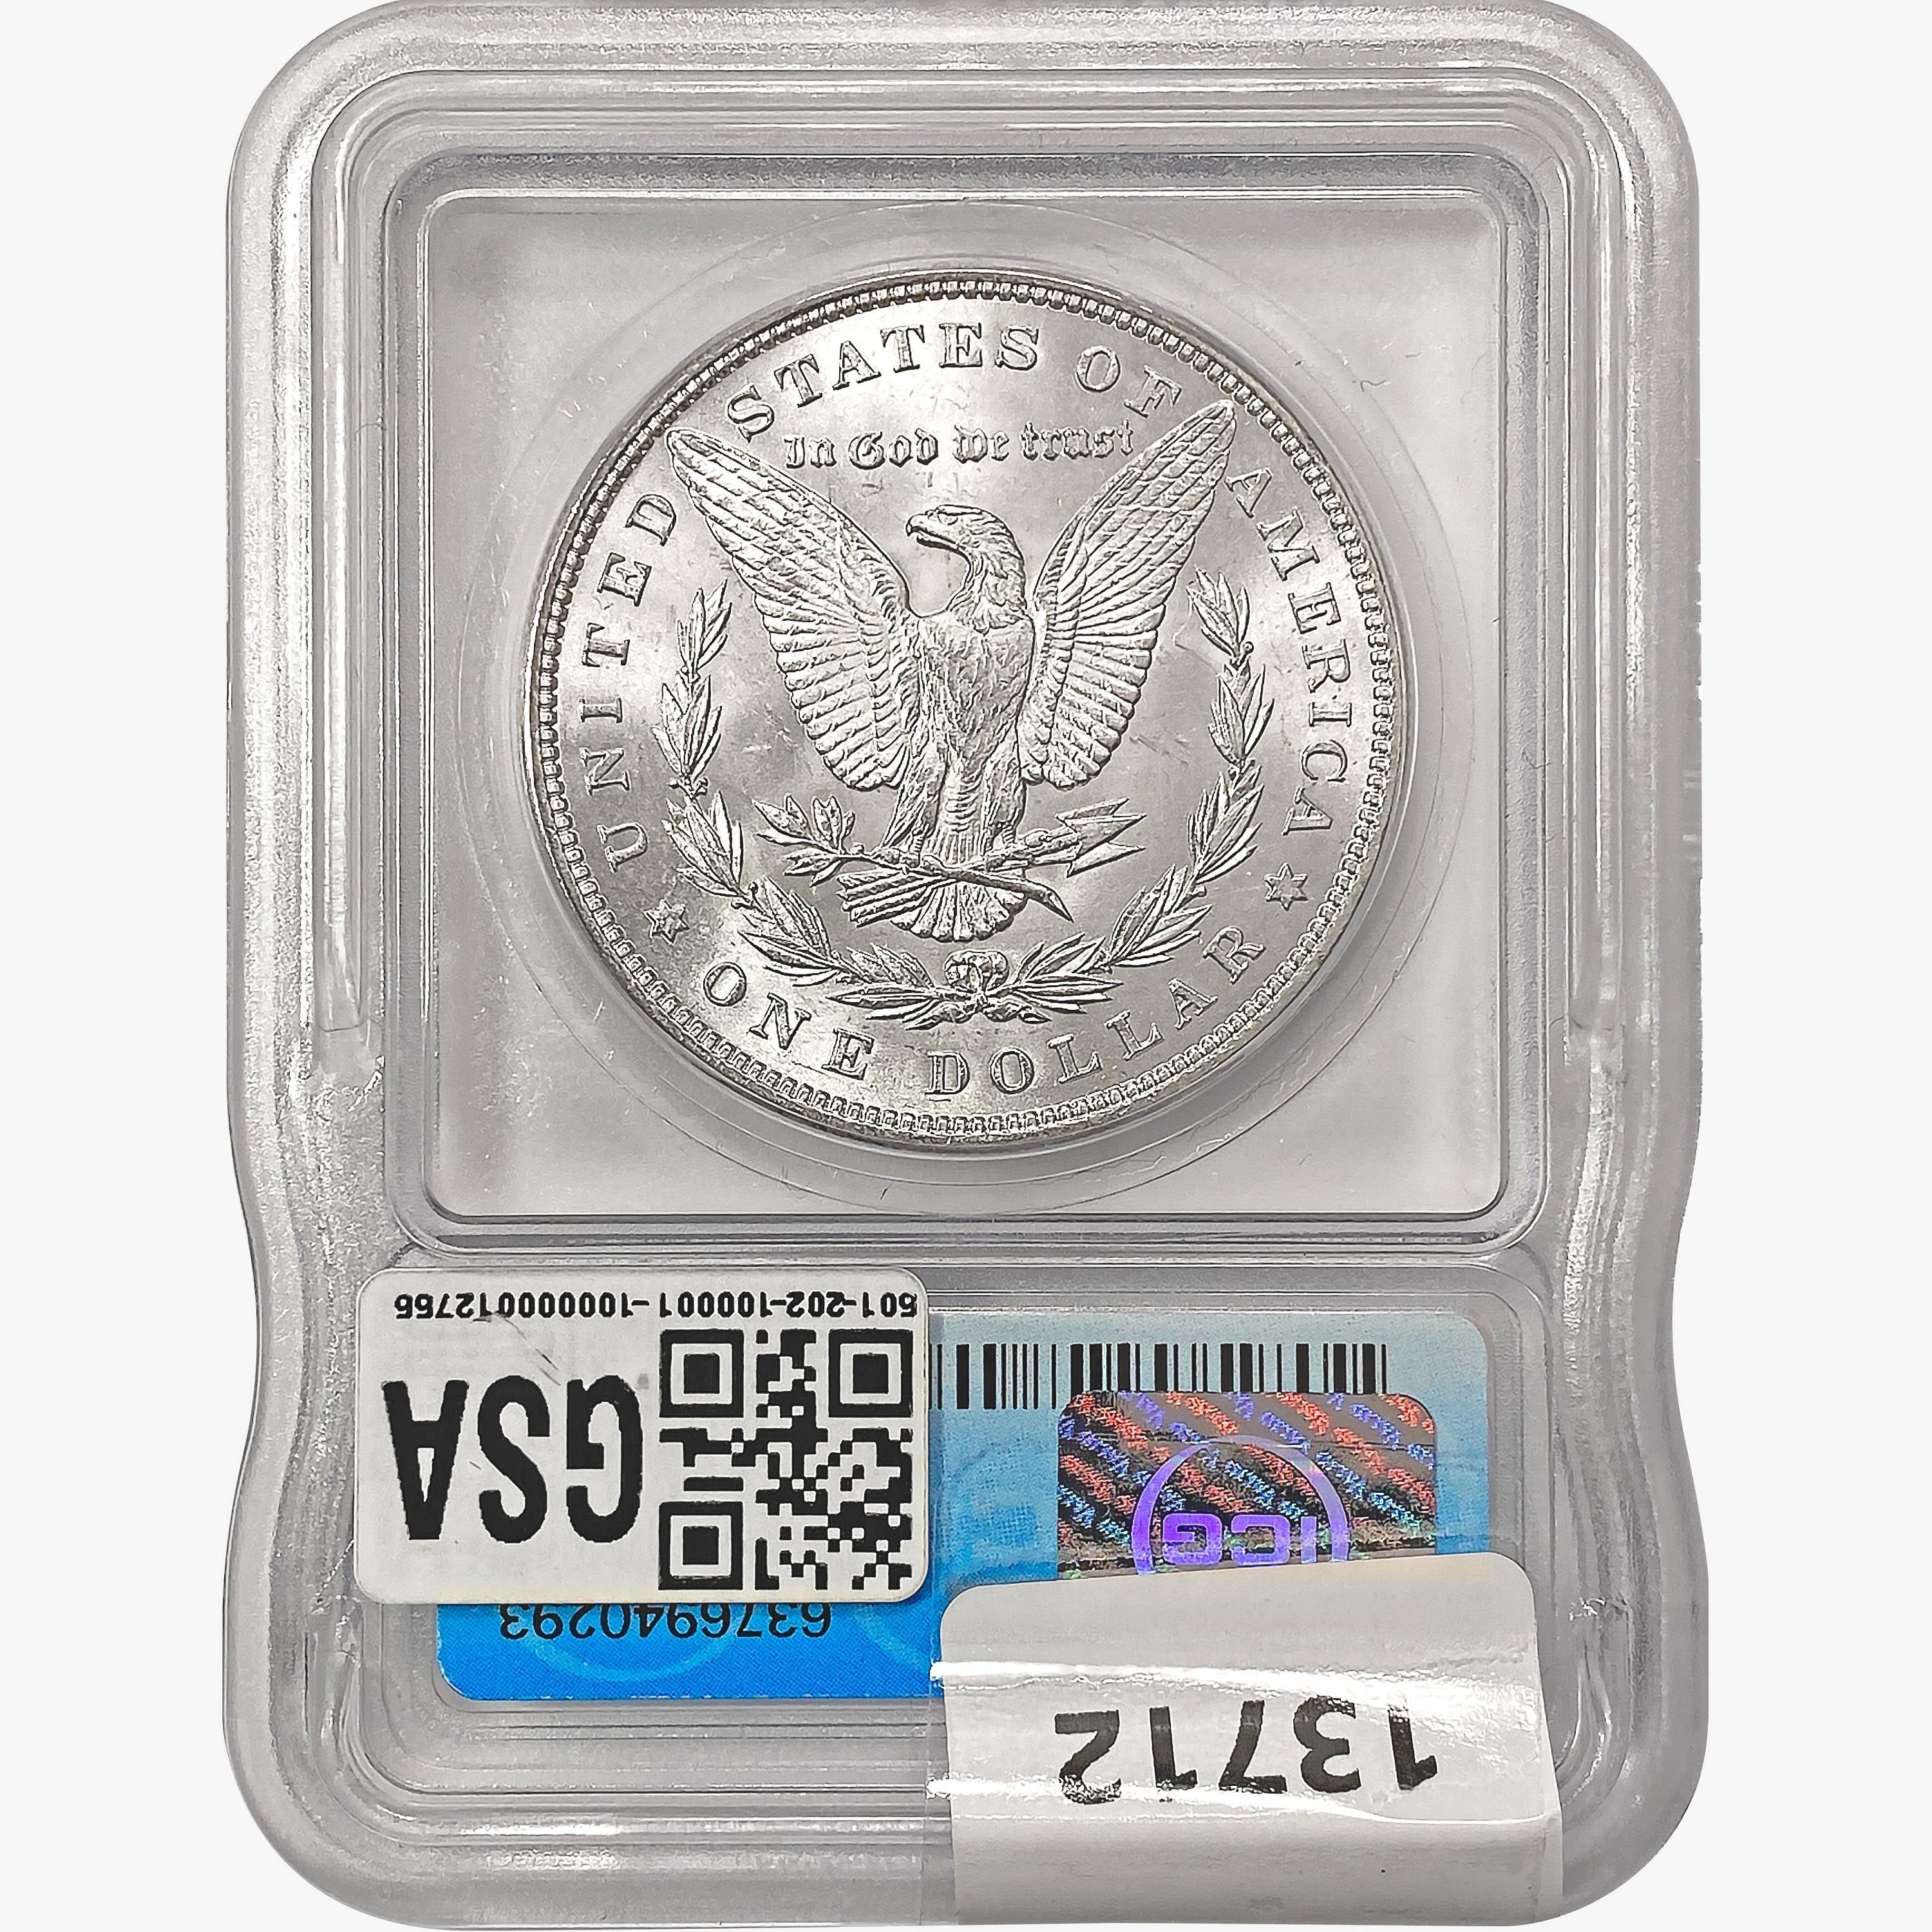 1896 Morgan Silver Dollar ICG MS65